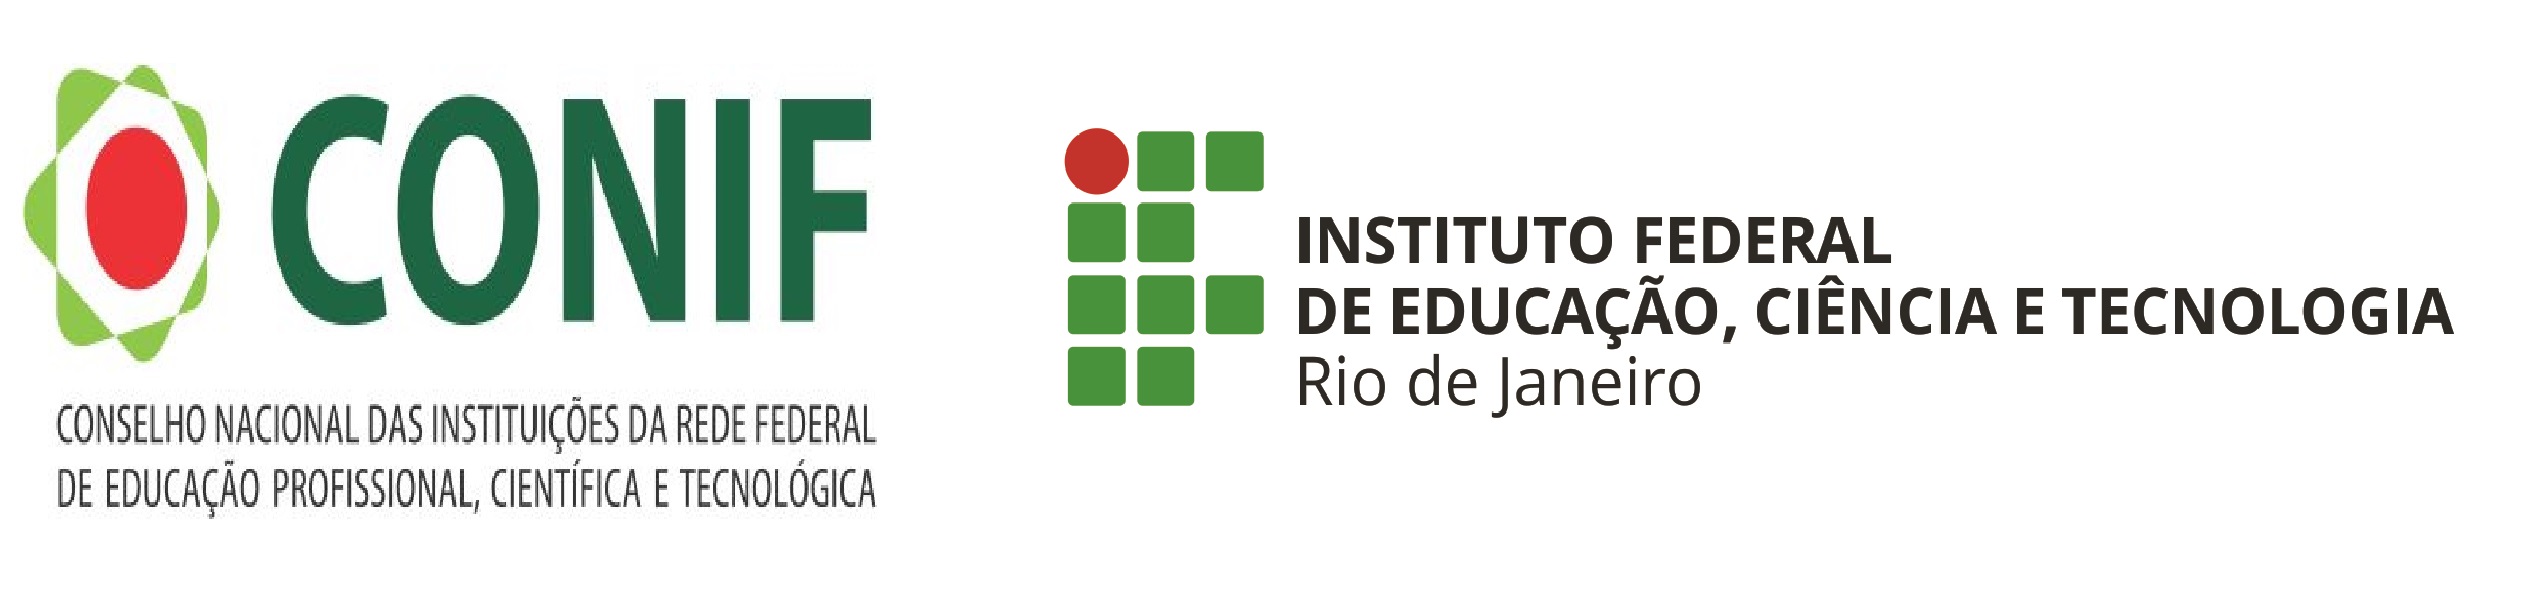 Logotipo do conselho nacional das instituições da rede federal de educação profissional, científica e tecnológica e o logotipo do IFRJ.